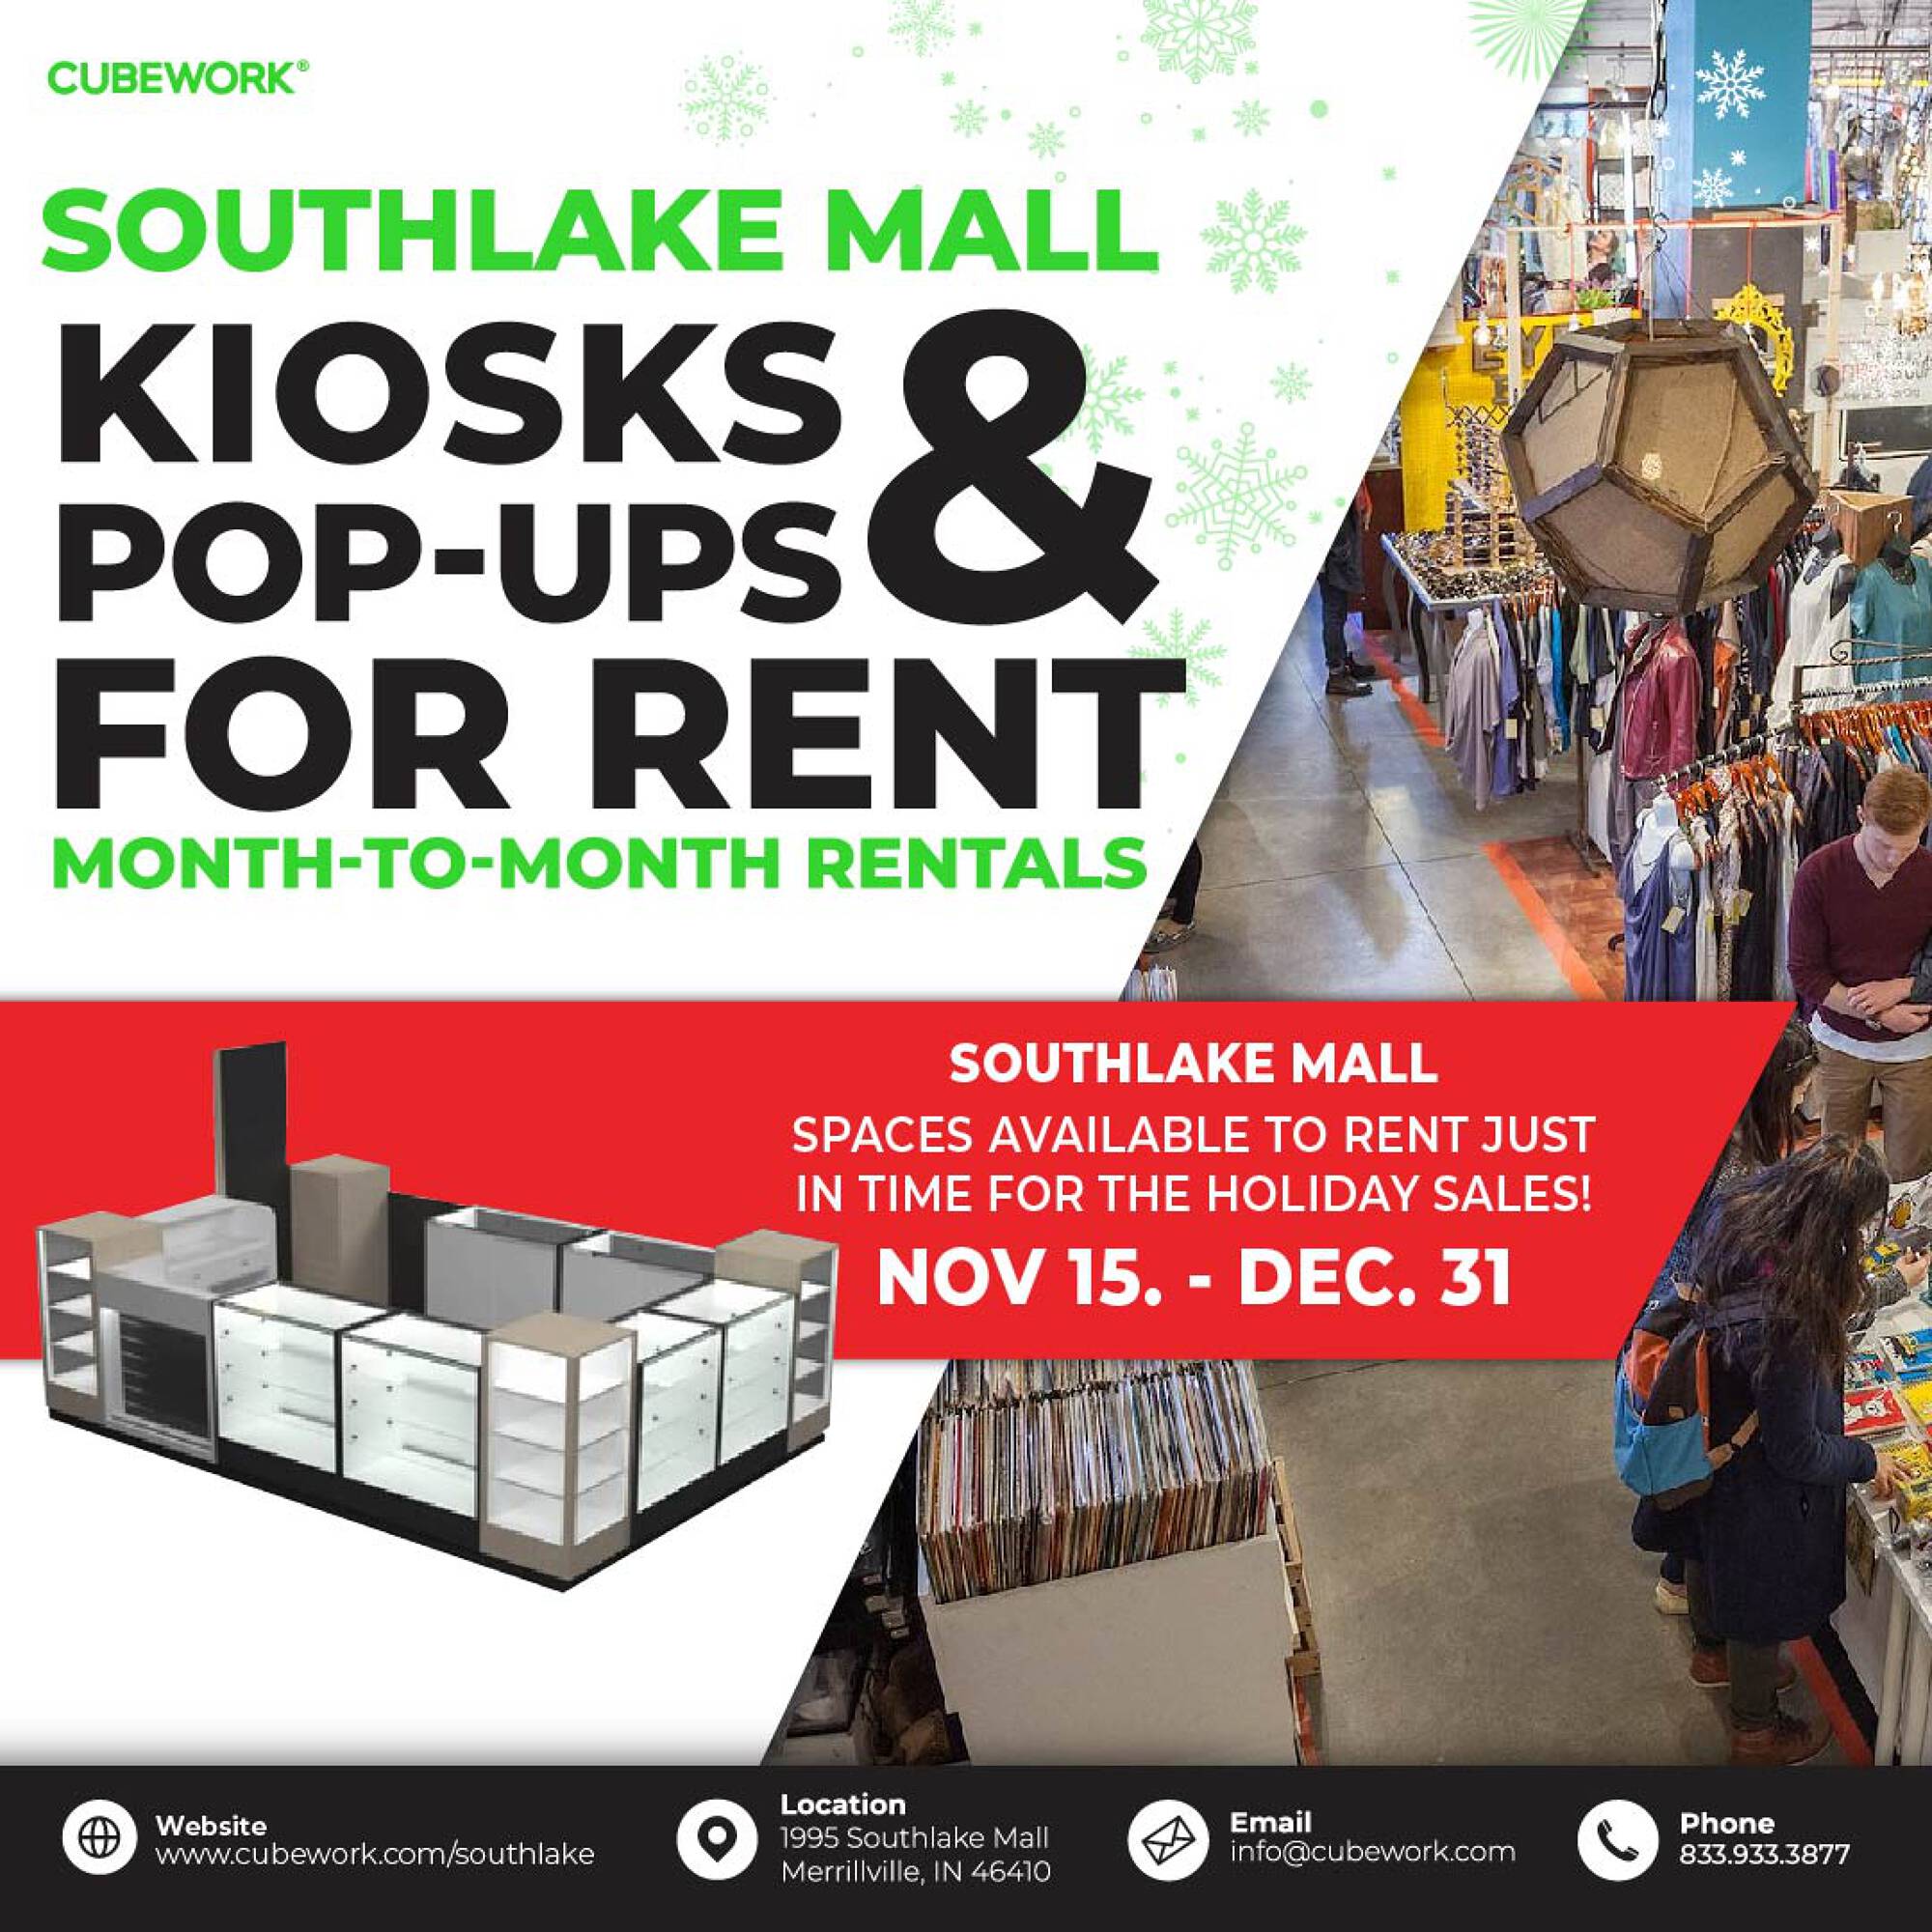 Southlake Mall sold